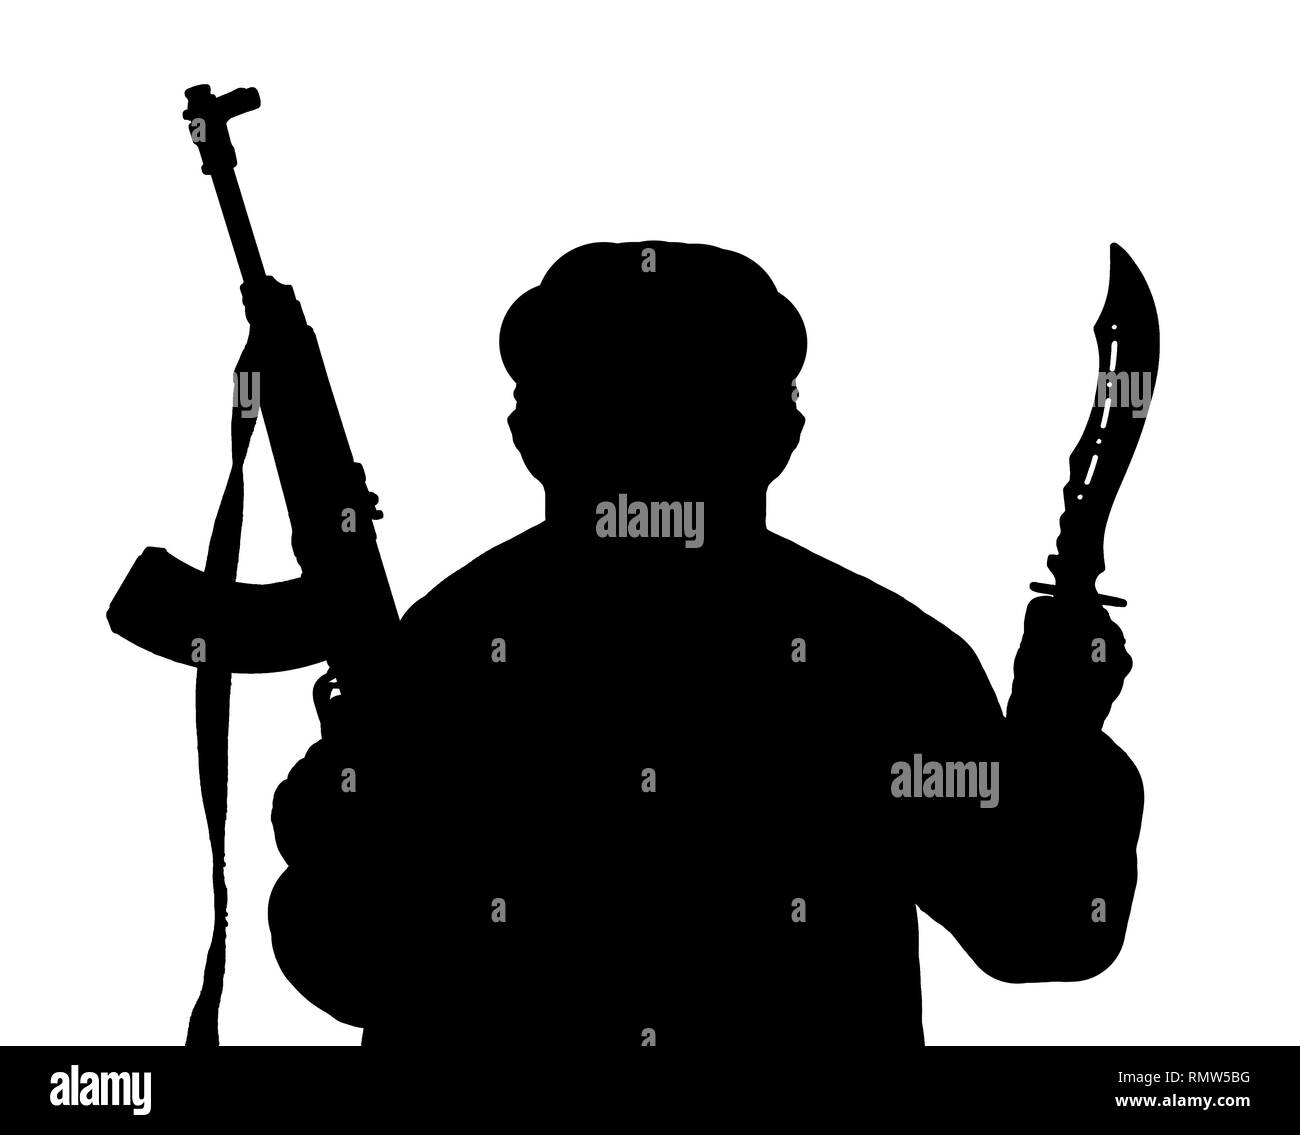 Die schwarze Silhouette des Menschen bewaffnet mit Kalaschnikow und Messer isoliert auf einem weißen Hintergrund. Stockfoto